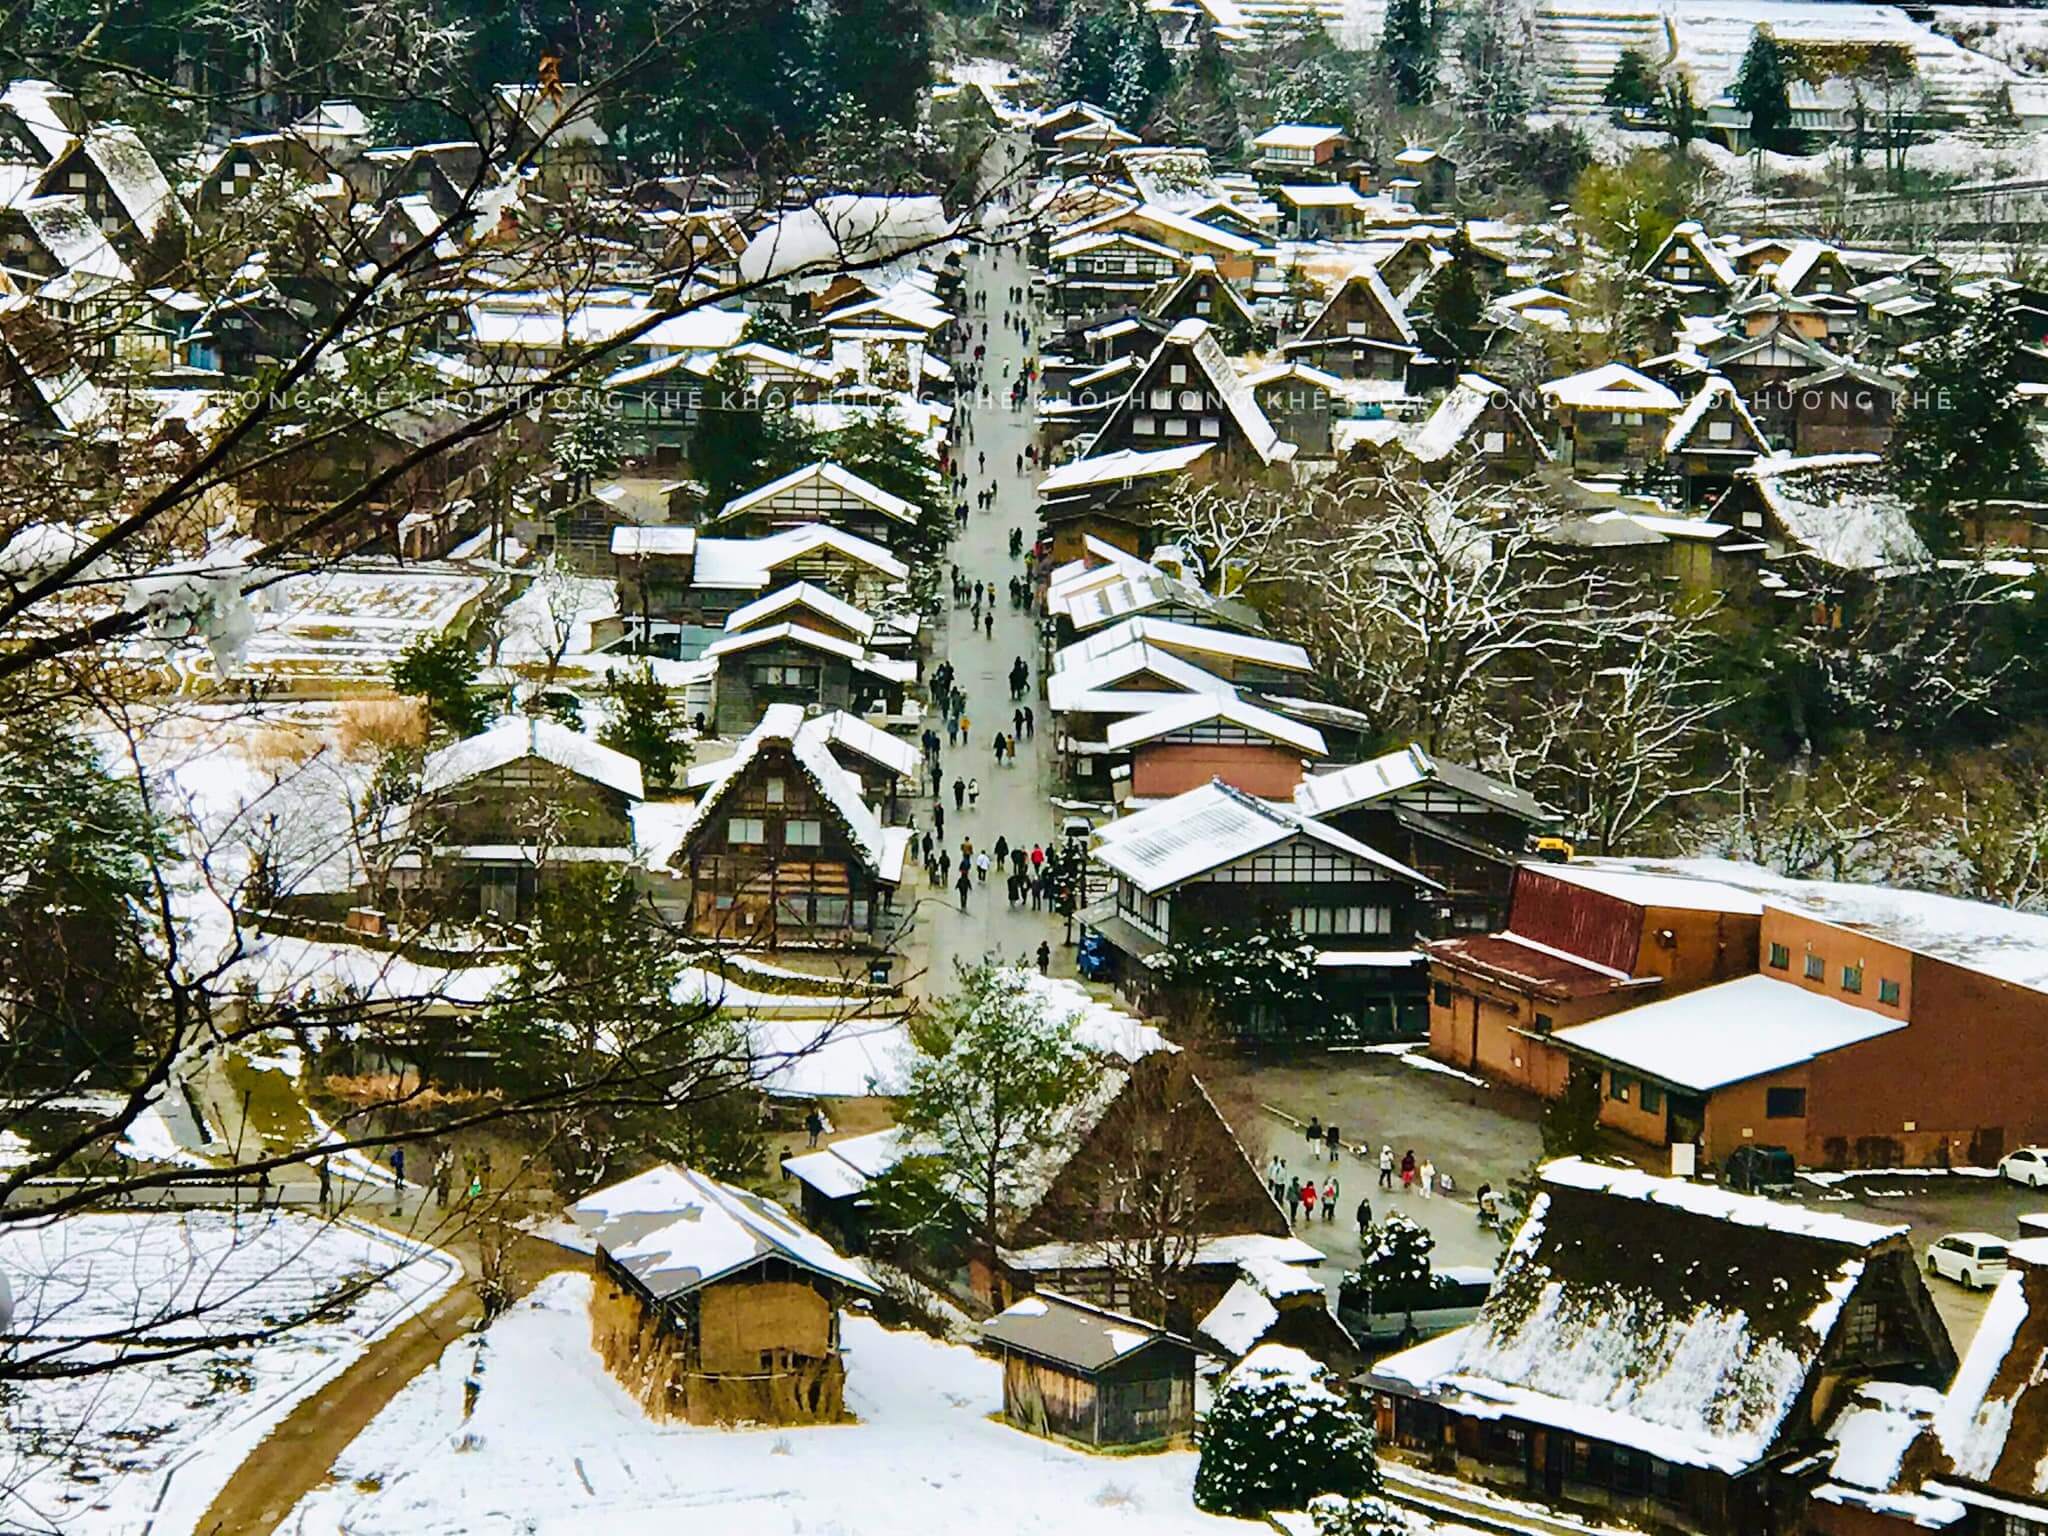 Làng cổ Shirakawago như một khu vườn cổ tích trong tuyết trắng